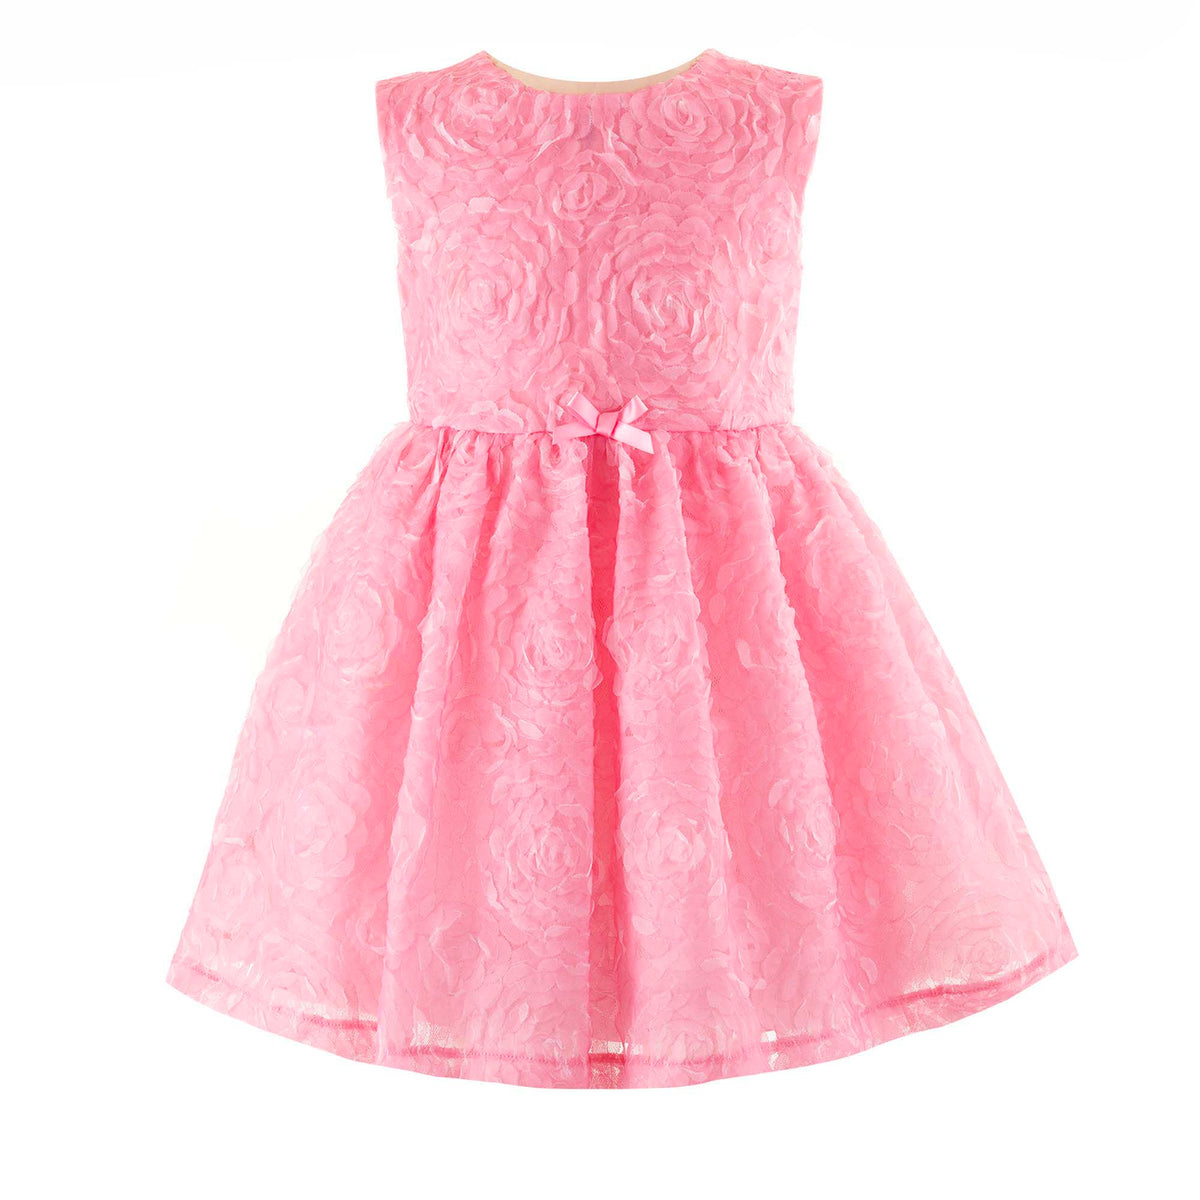 Rachel Riley Pink Rosette Tulle Dress